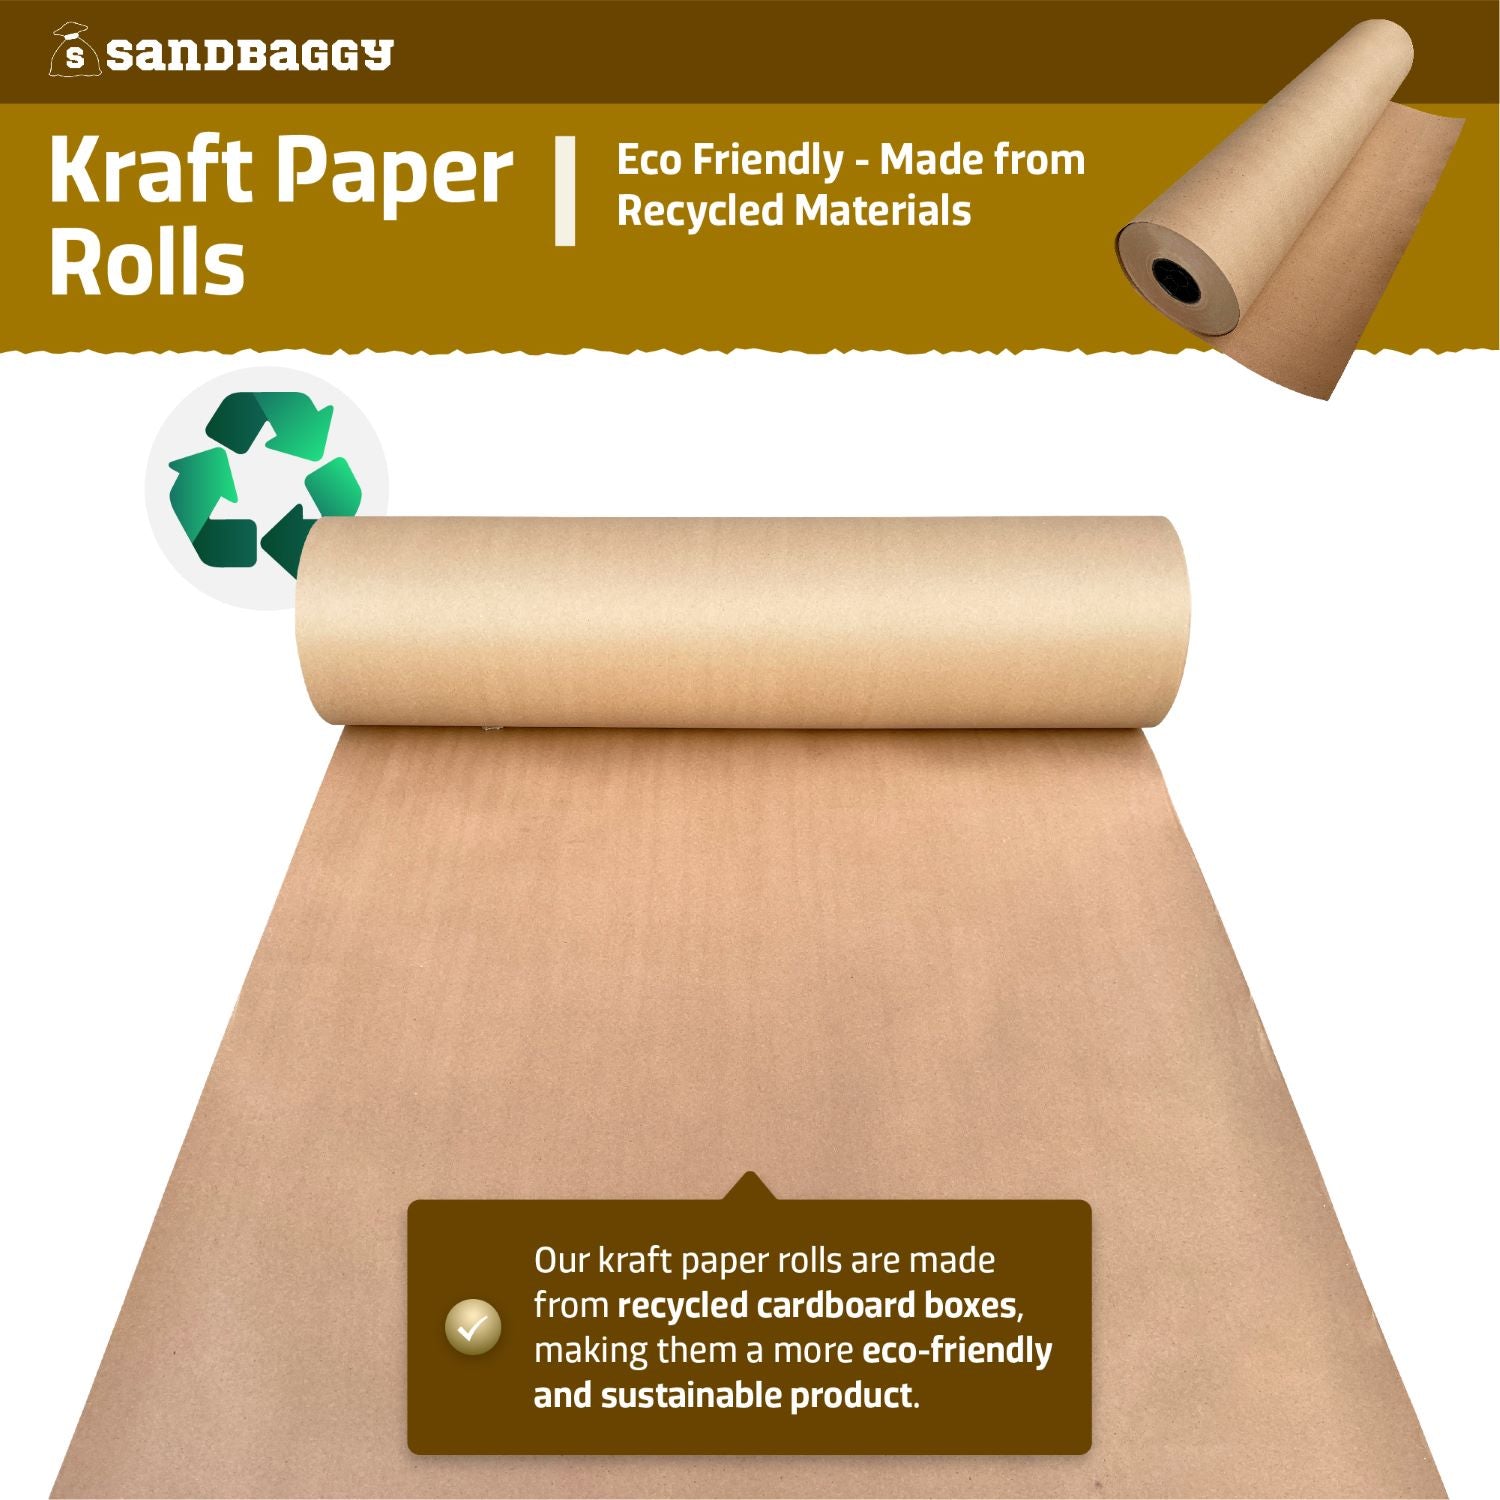 75 lb Kraft Paper Roll Skid Lot - 48 x 475' S-7053S - Uline